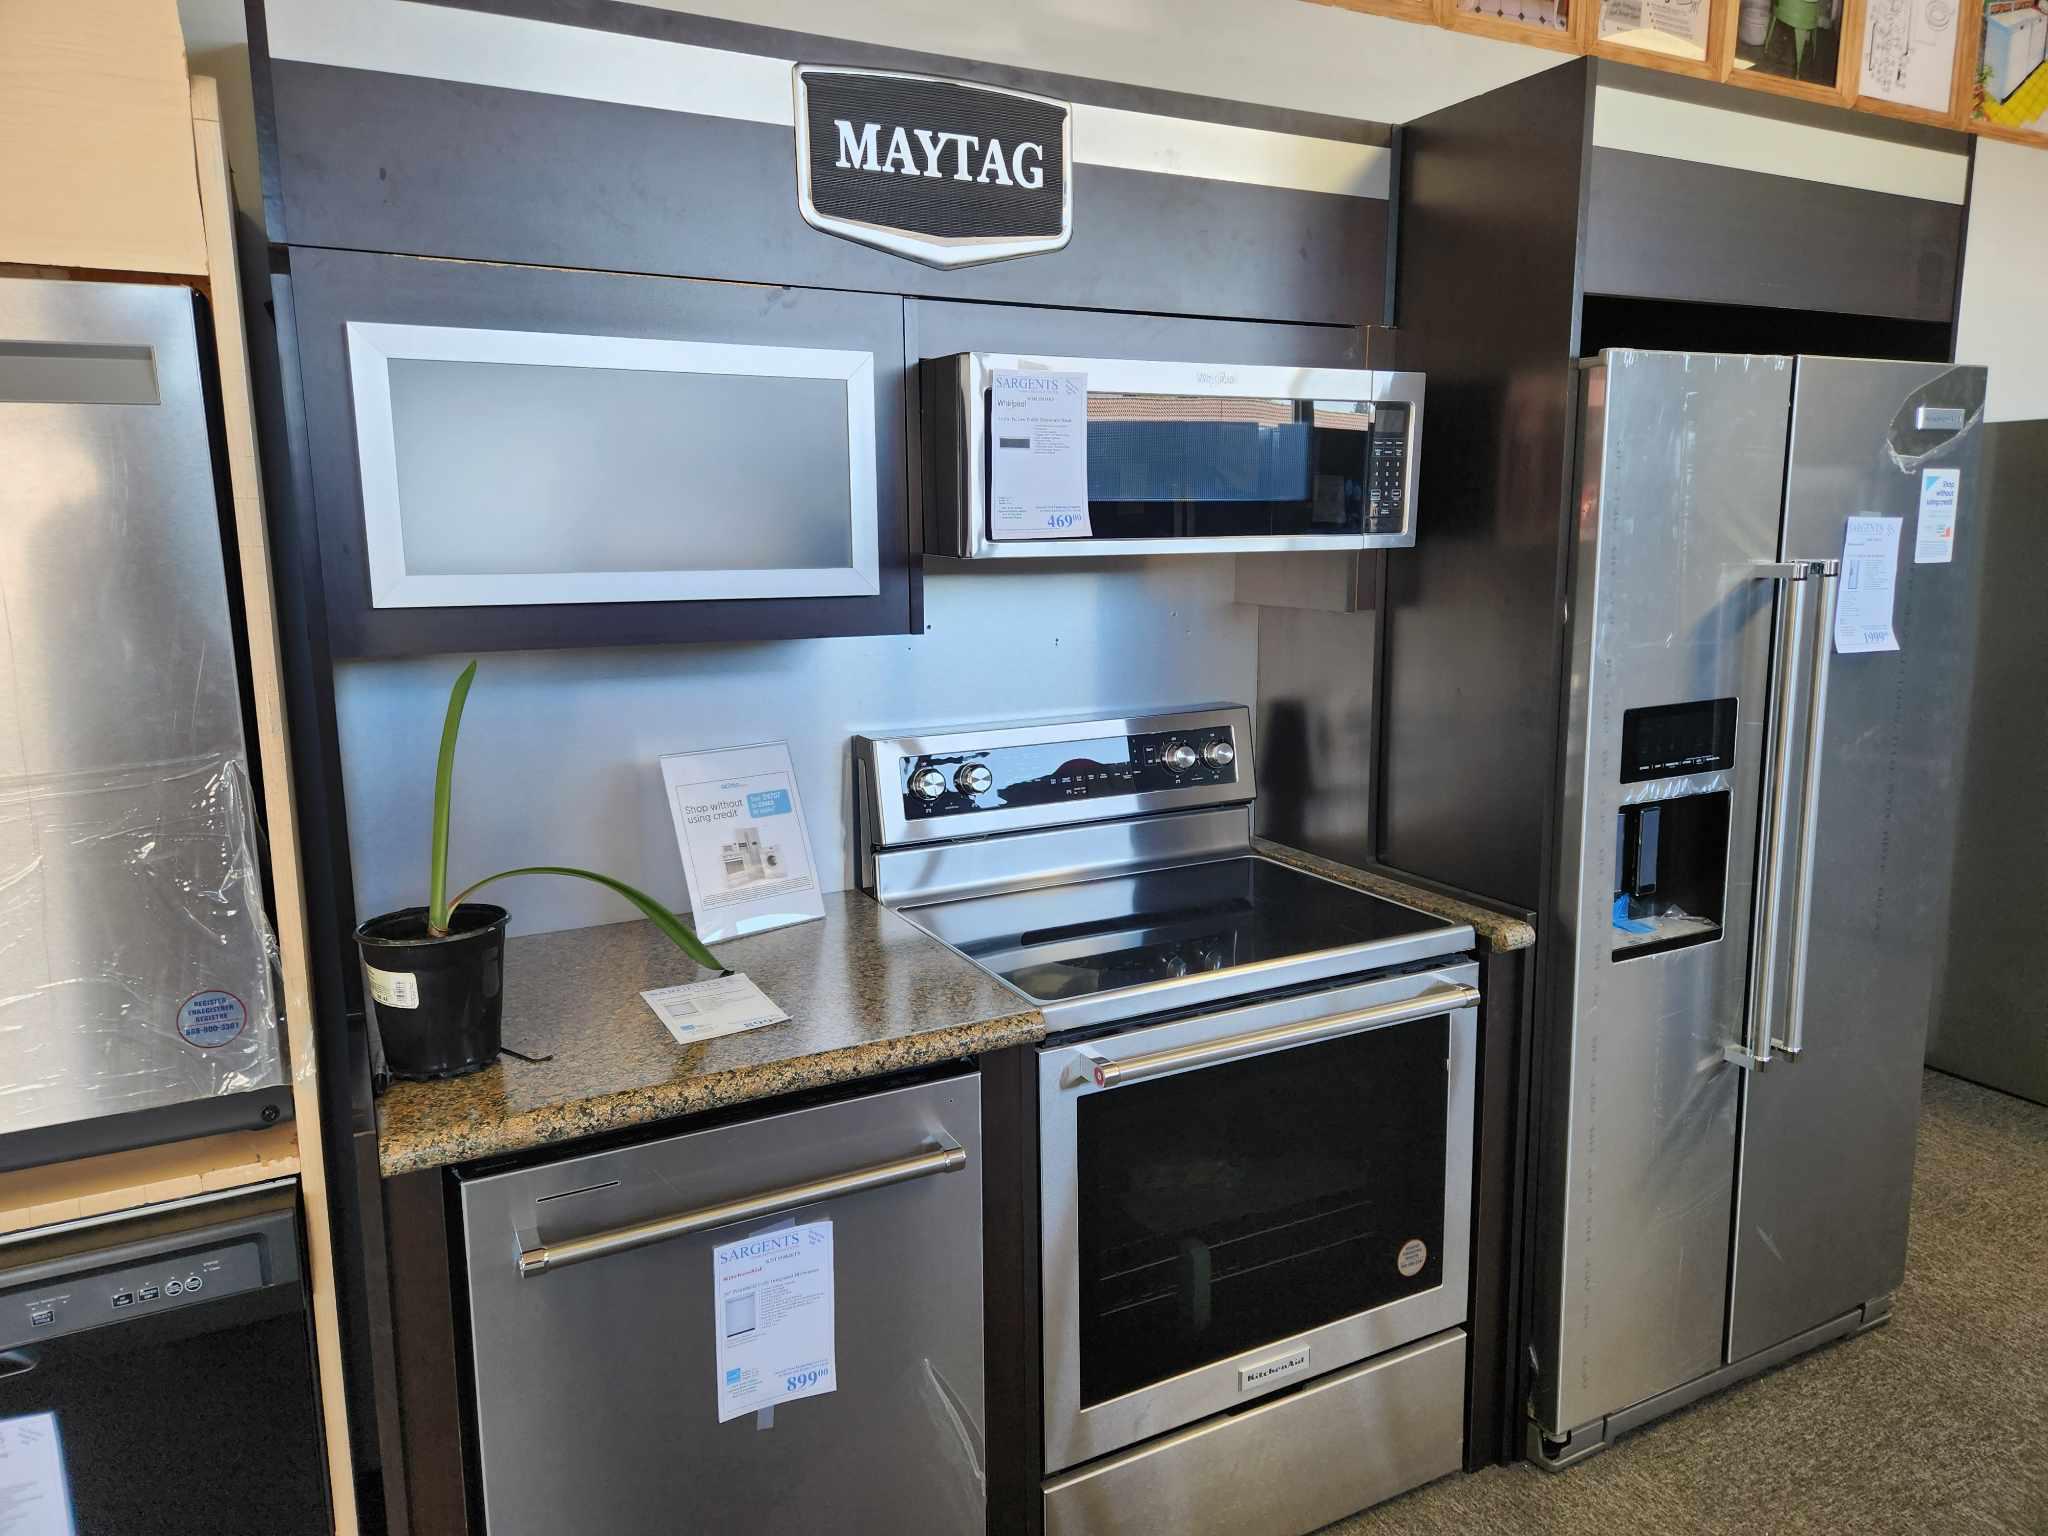 Kitchenaid kitchen appliance suite